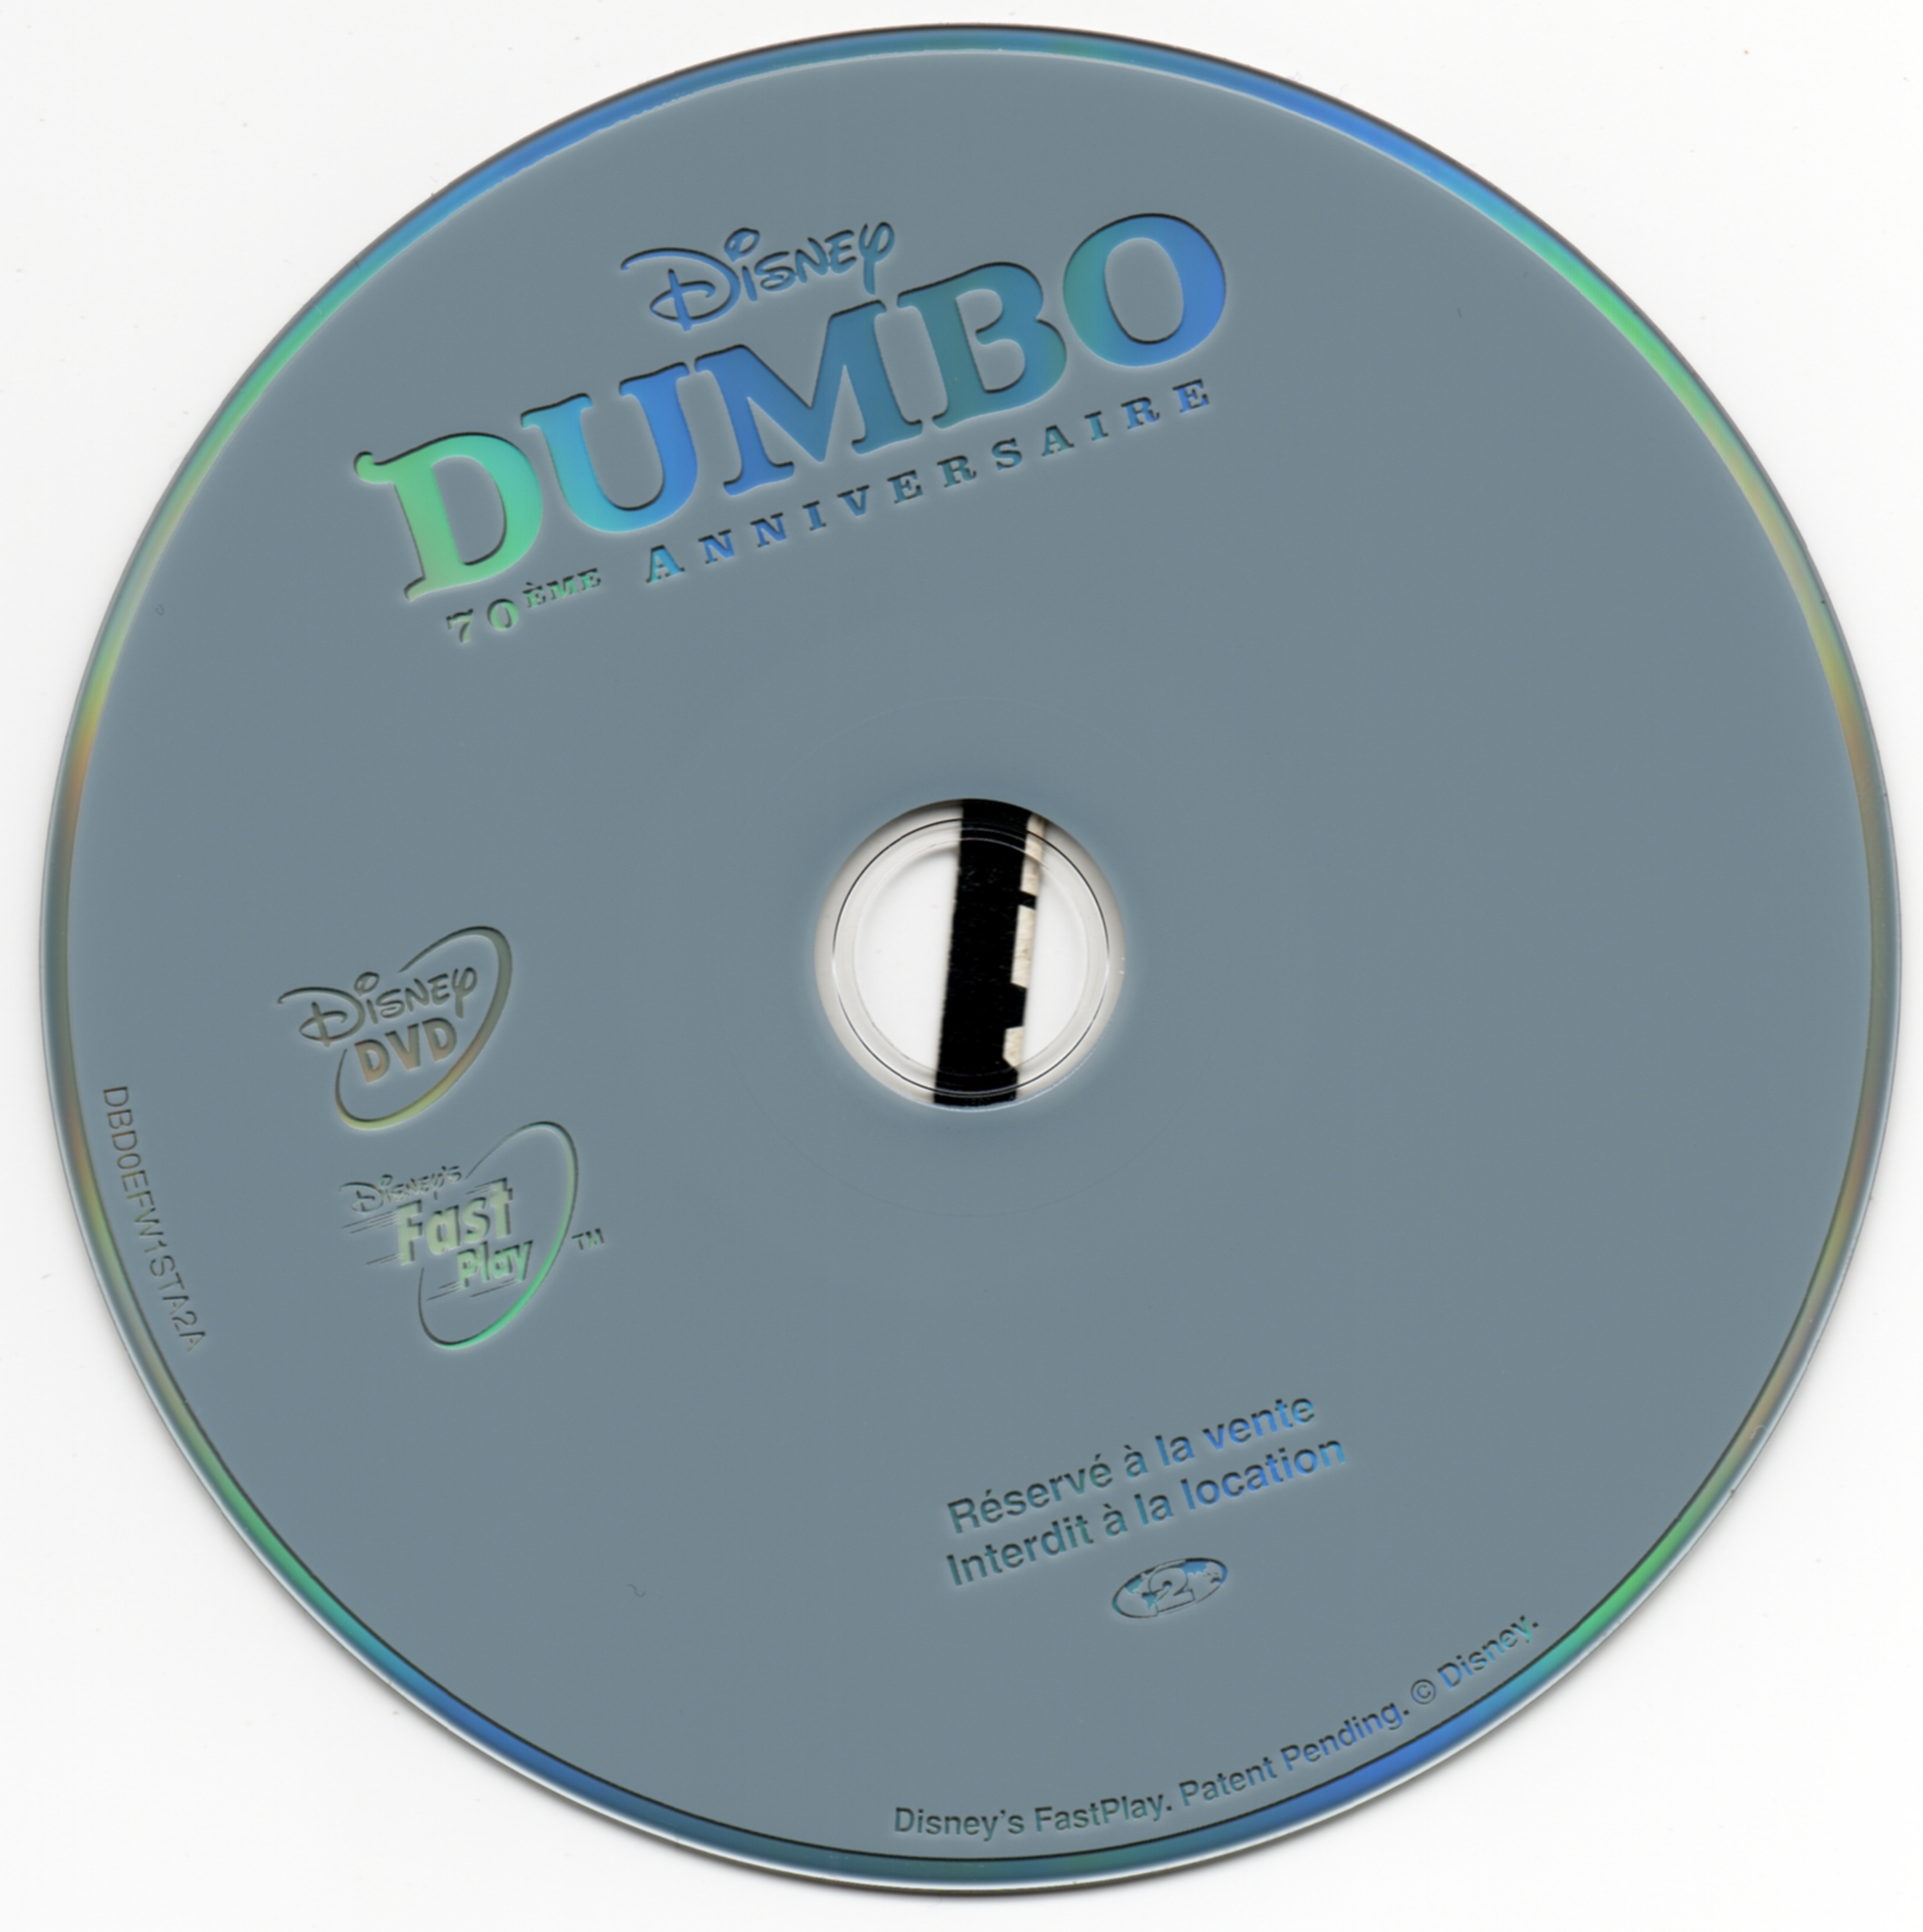 Dumbo v3